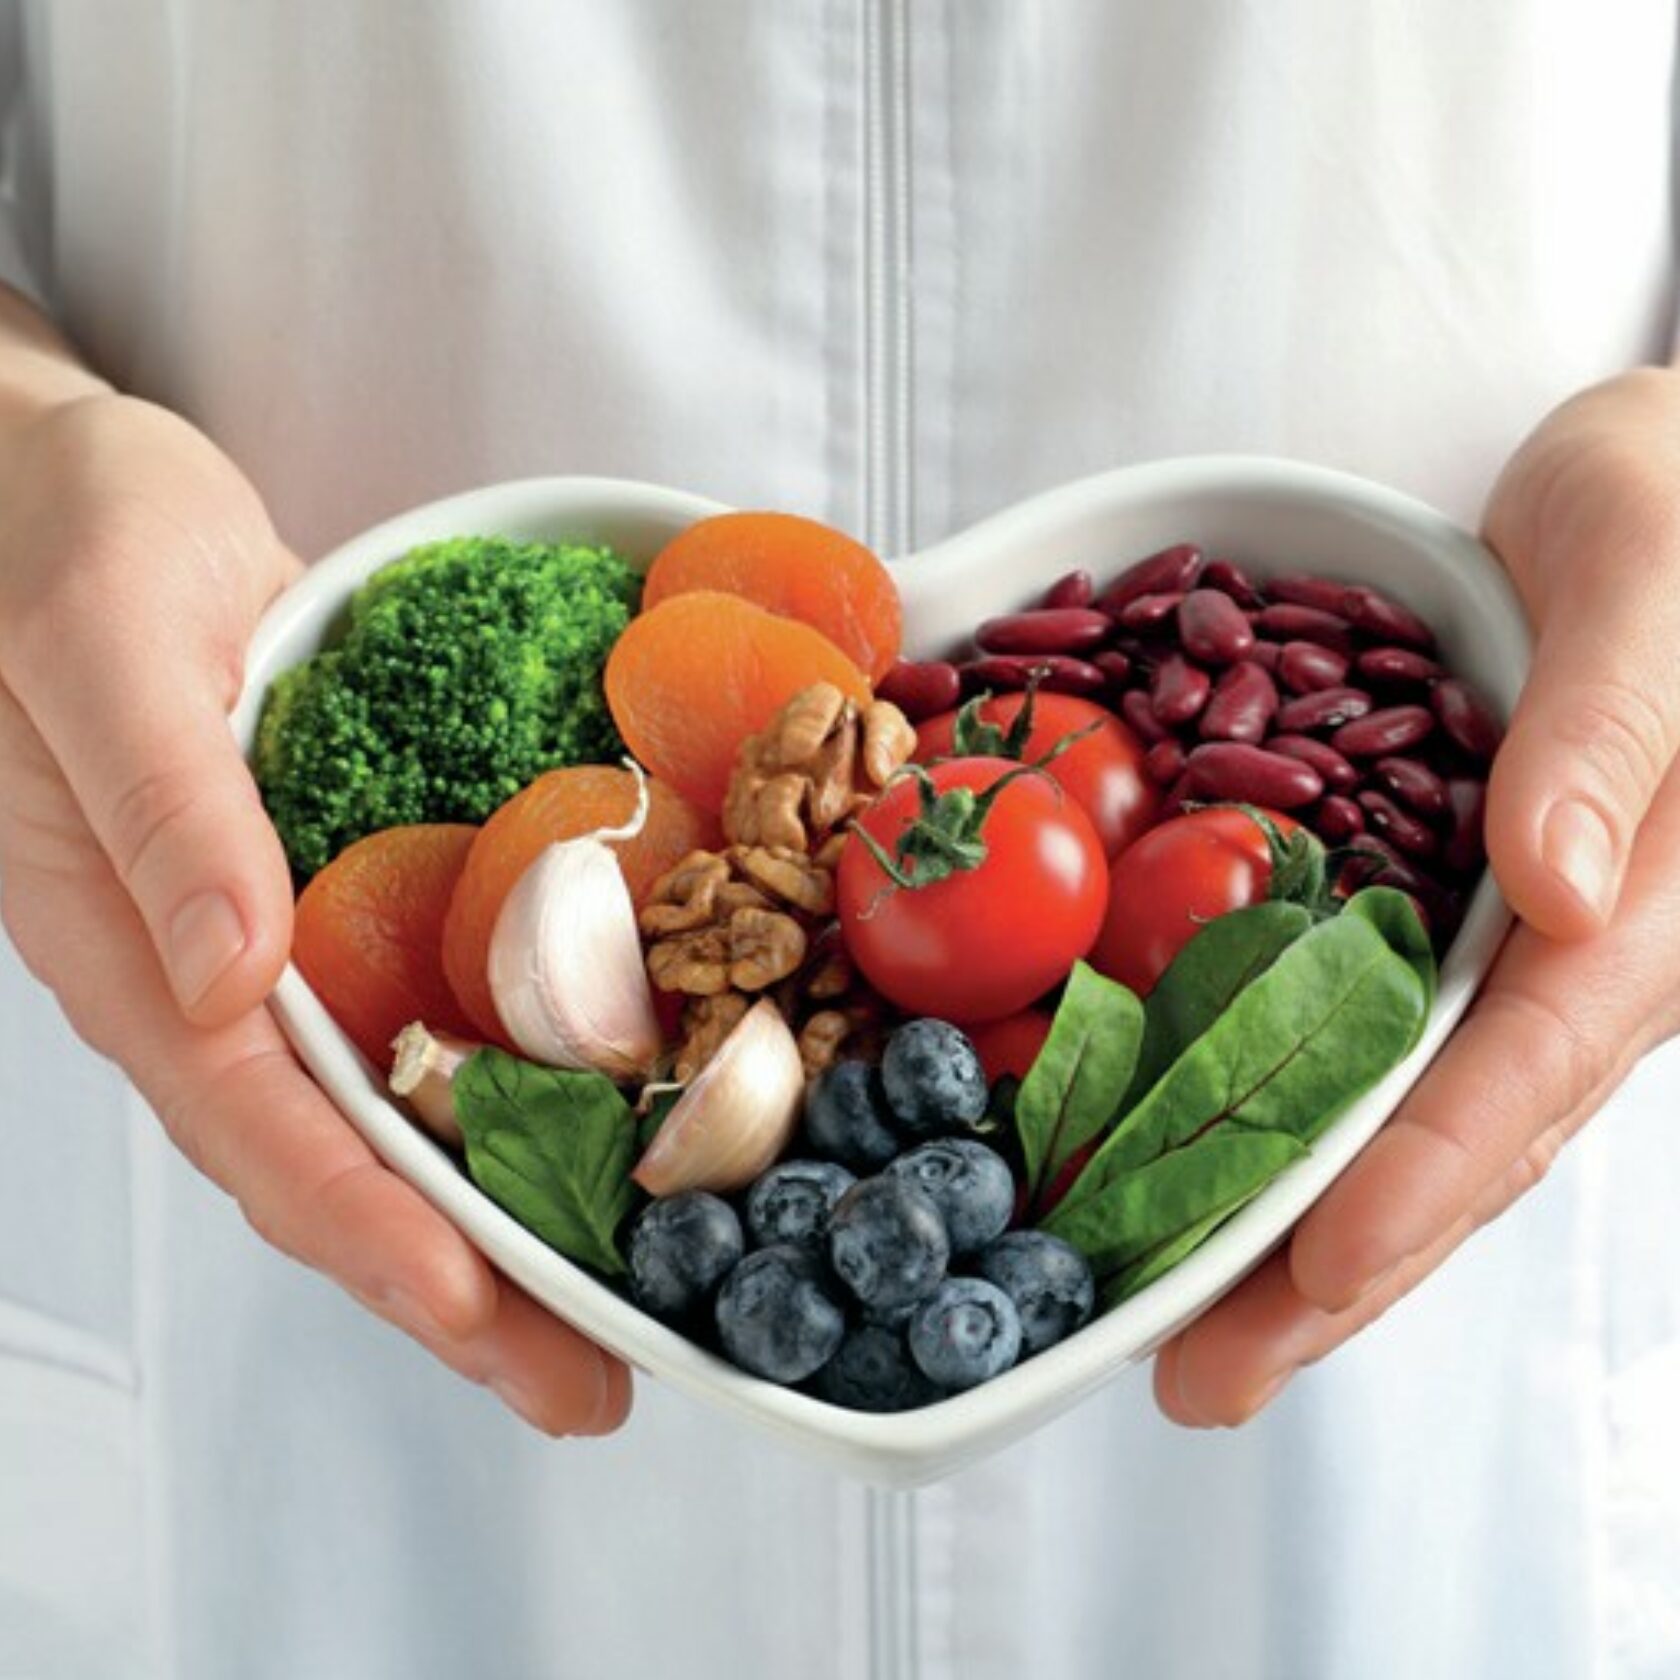 Lebensmittel, die gesund fürs Herz sind - wie Brokkoli, Aprikosen, Knoblauch, Walnüsse, Bohnen, Tomaten, Heidelbeeren - in einer herzförmigen Schale